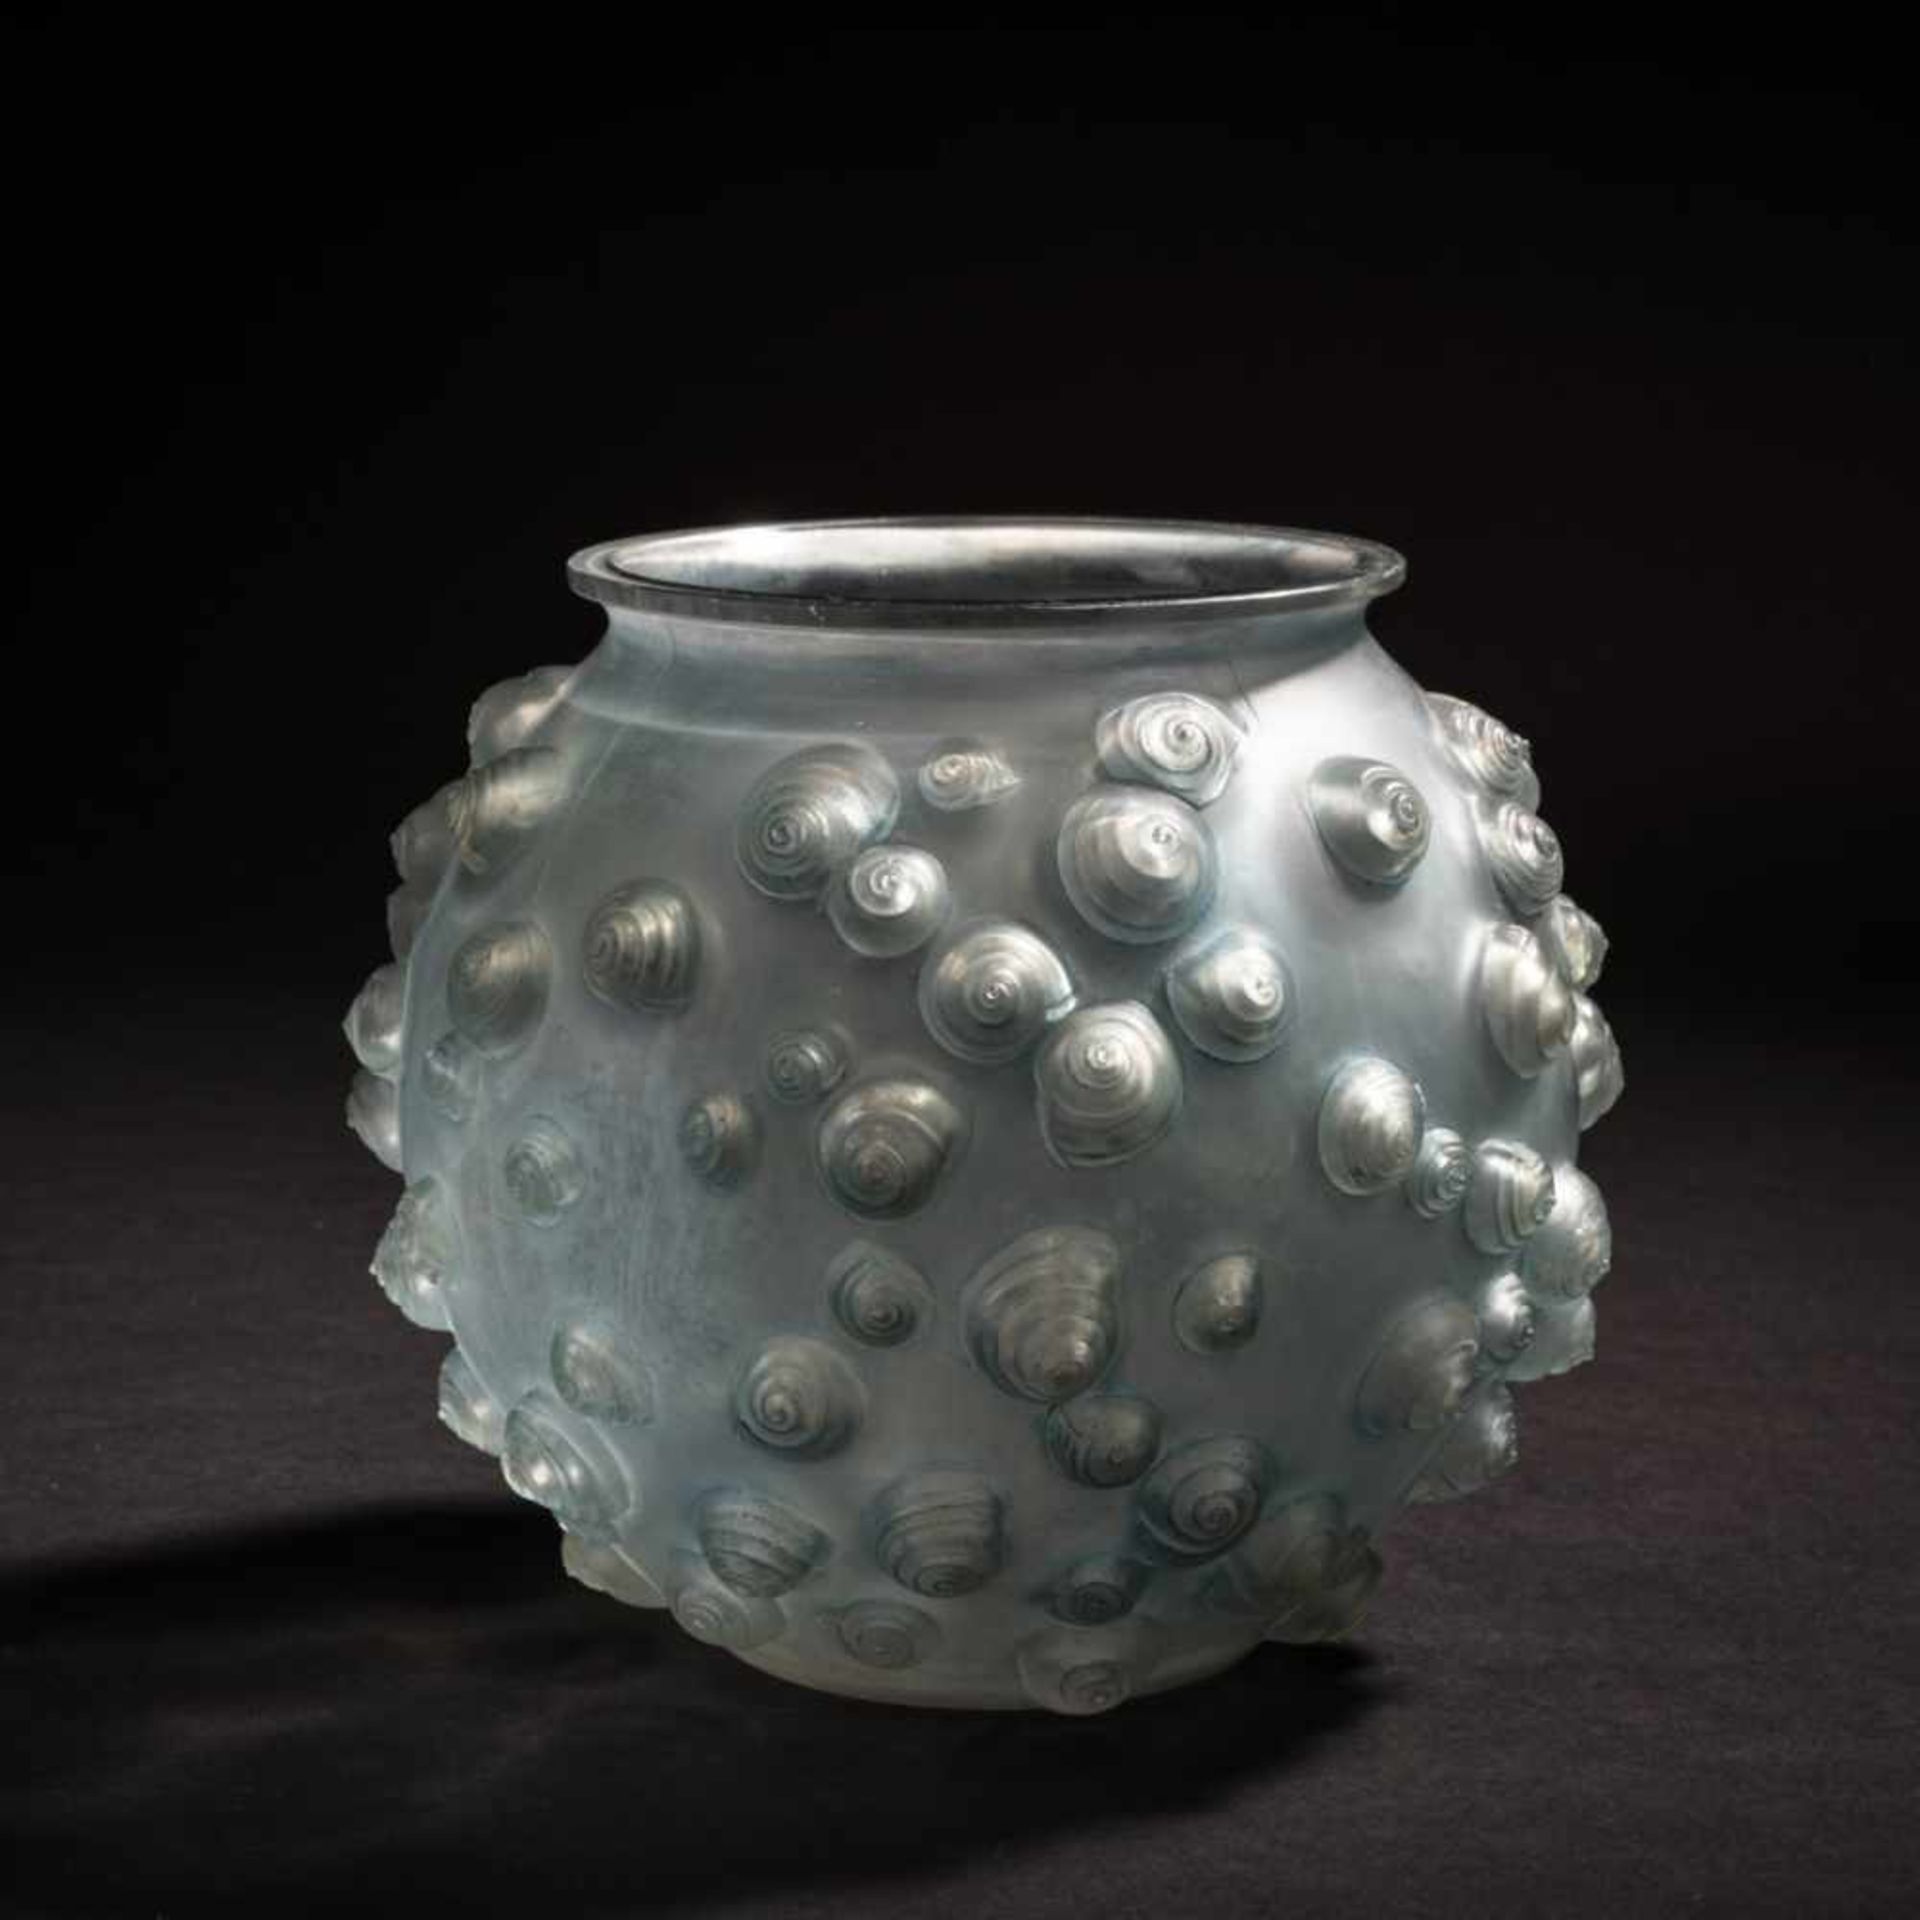 René Lalique, 'Palissy' vase, 1926'Palissy' vase, 1926H. 16.5 cm. Clear, mould-blown glass, blue